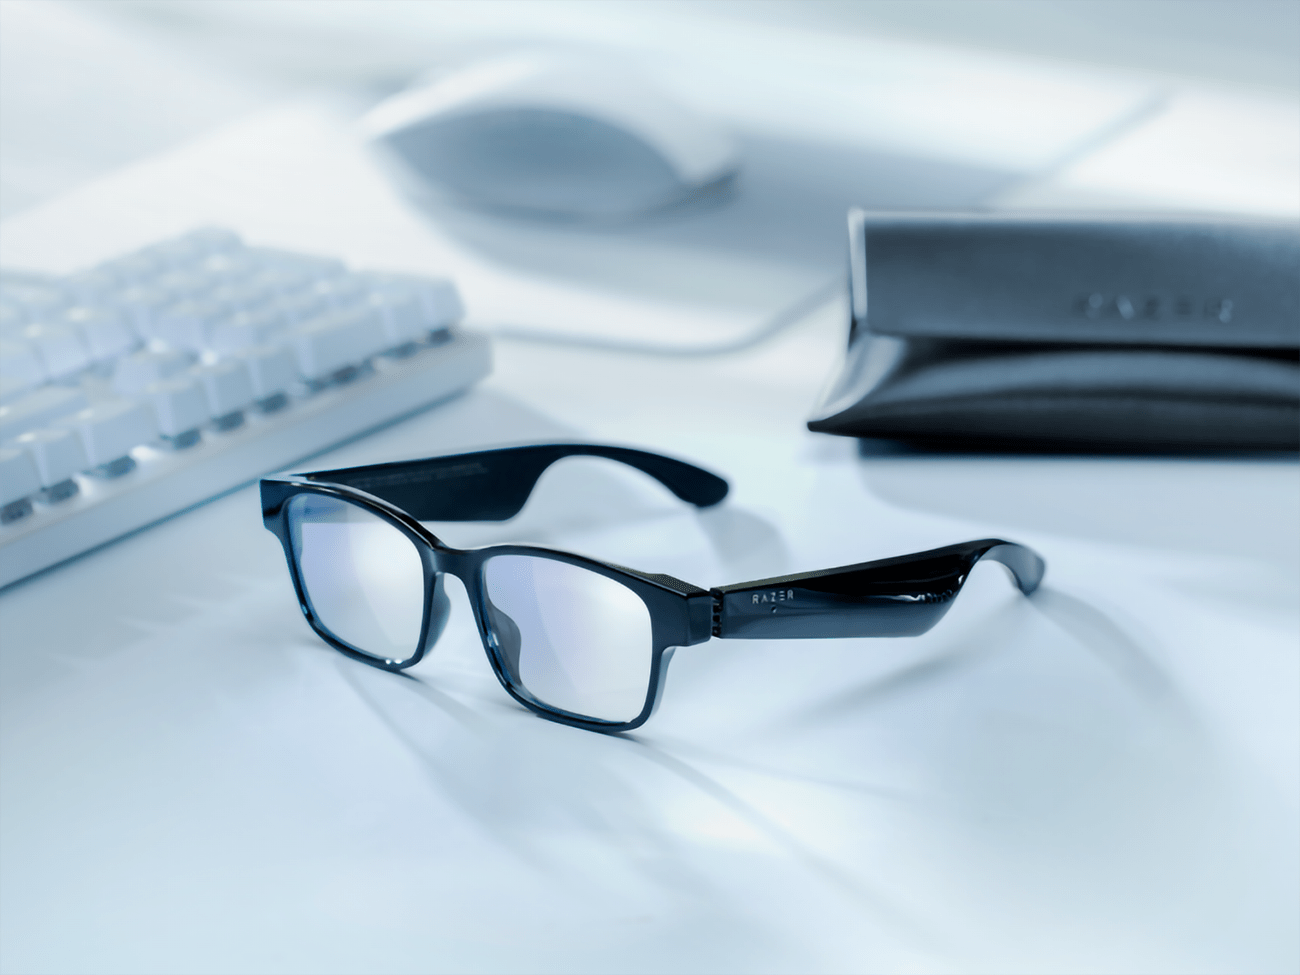 Razer Anzu : des lunettes connectées pour soigner ses yeux et écouter sa musique